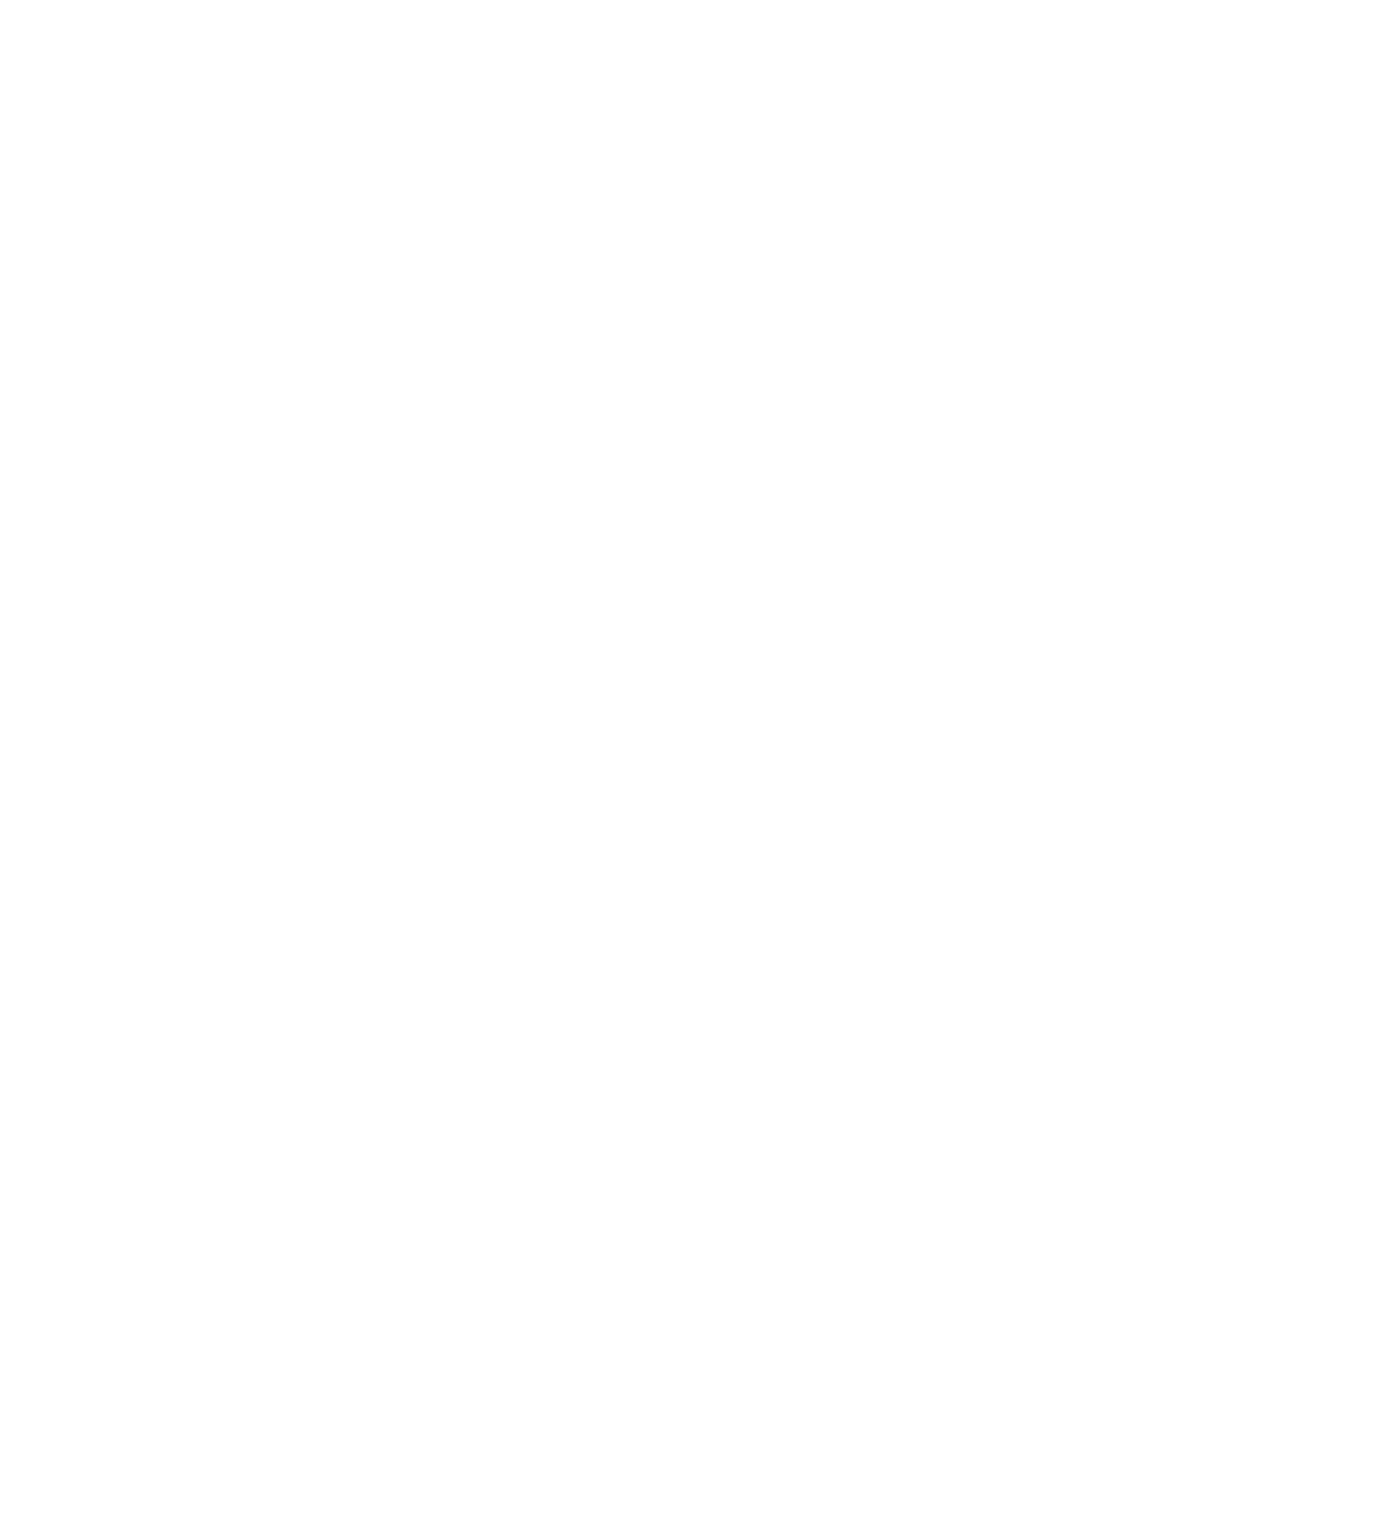 Baidu logo for dark backgrounds (transparent PNG)